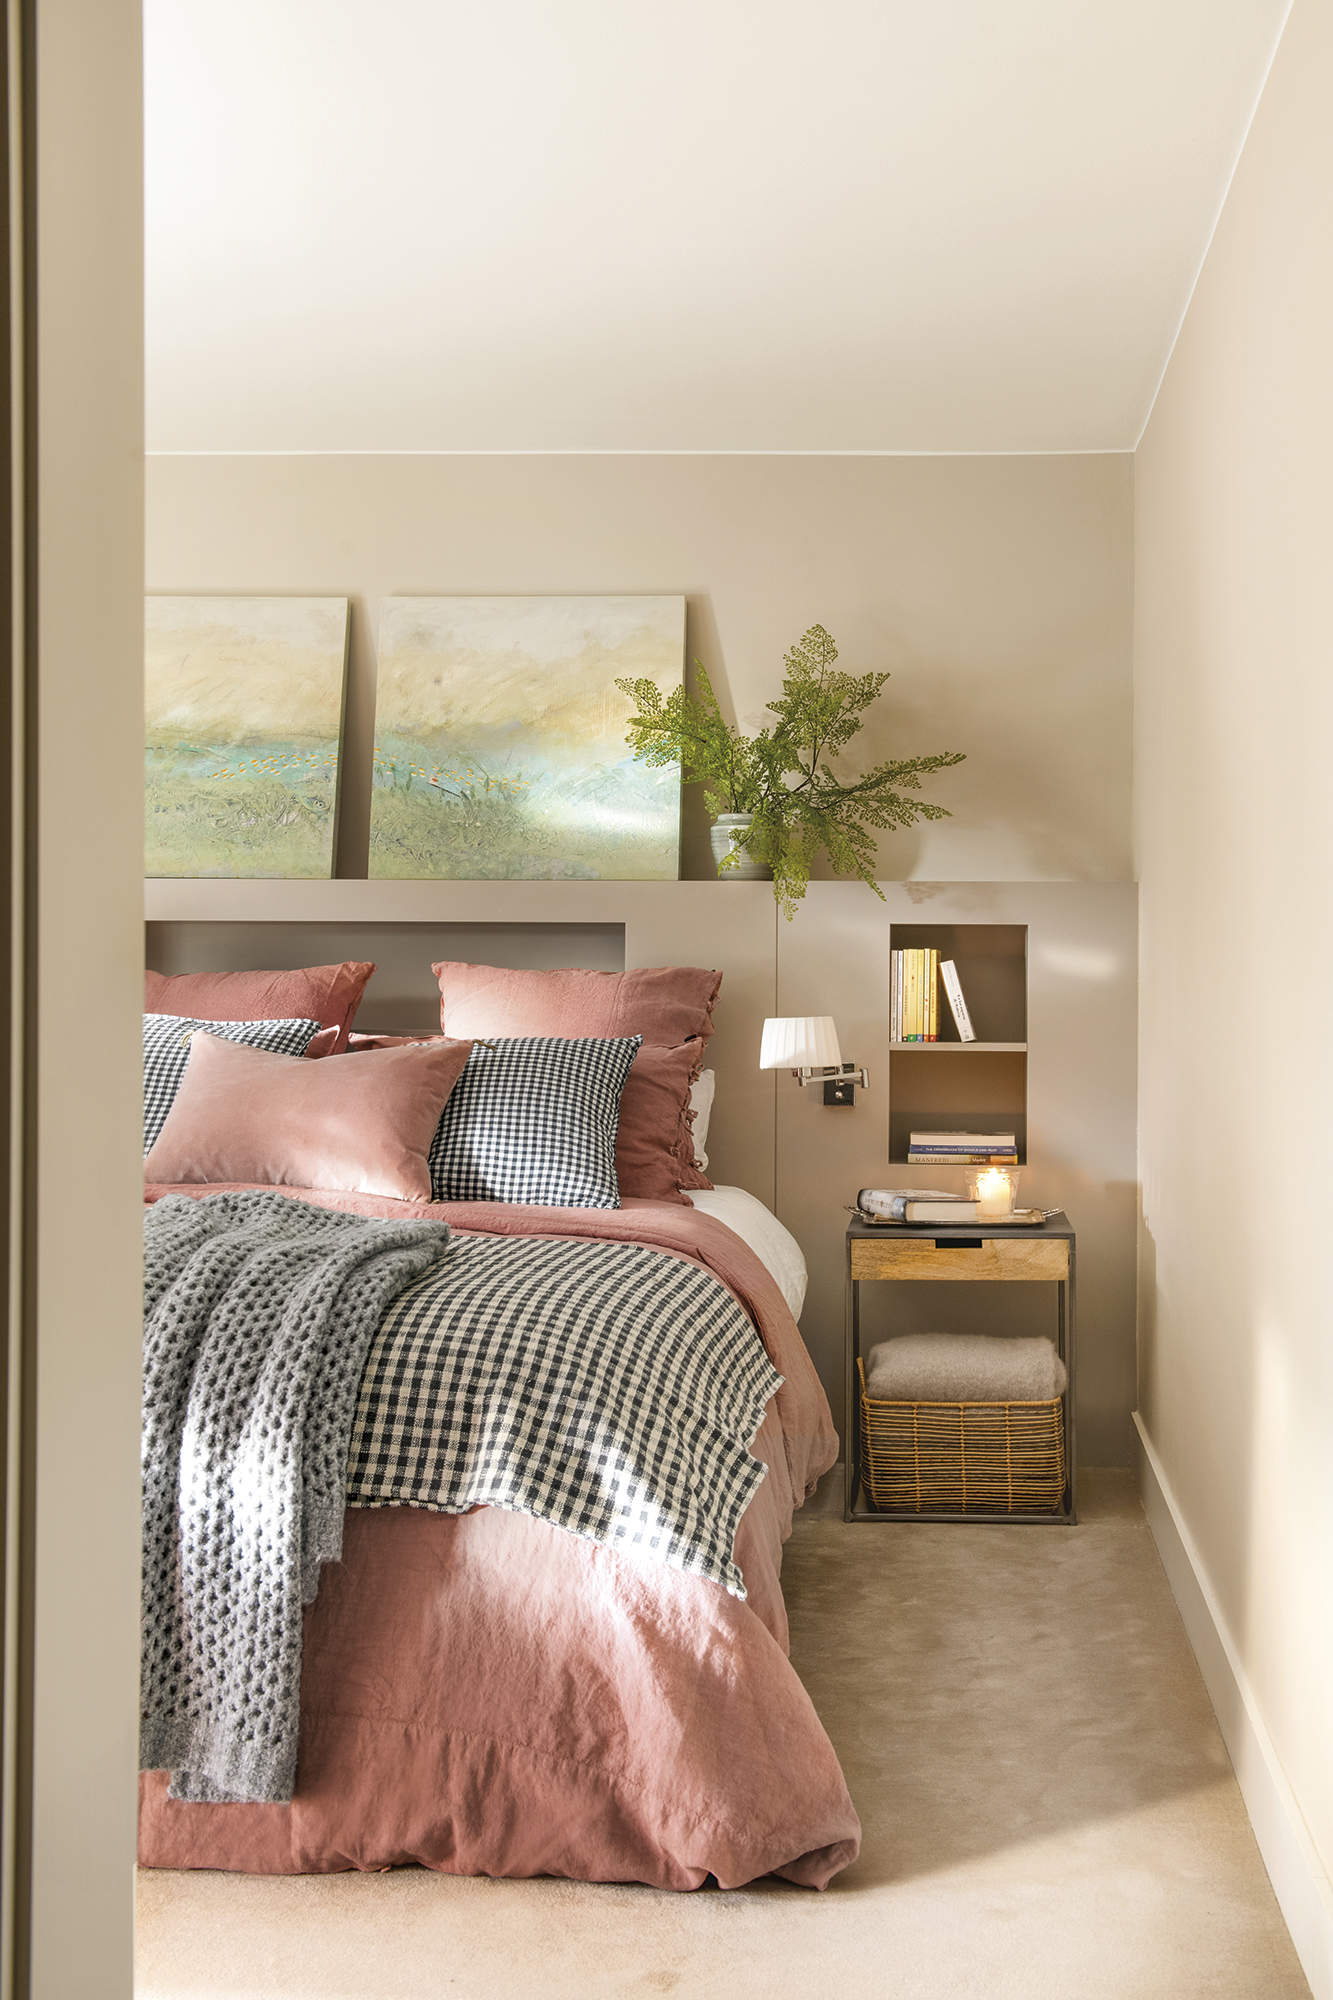 Dormitorio principal con moqueta beige, cama con cabecero de obra, cuadros, ropa de cama rosada y gris a cuadros.